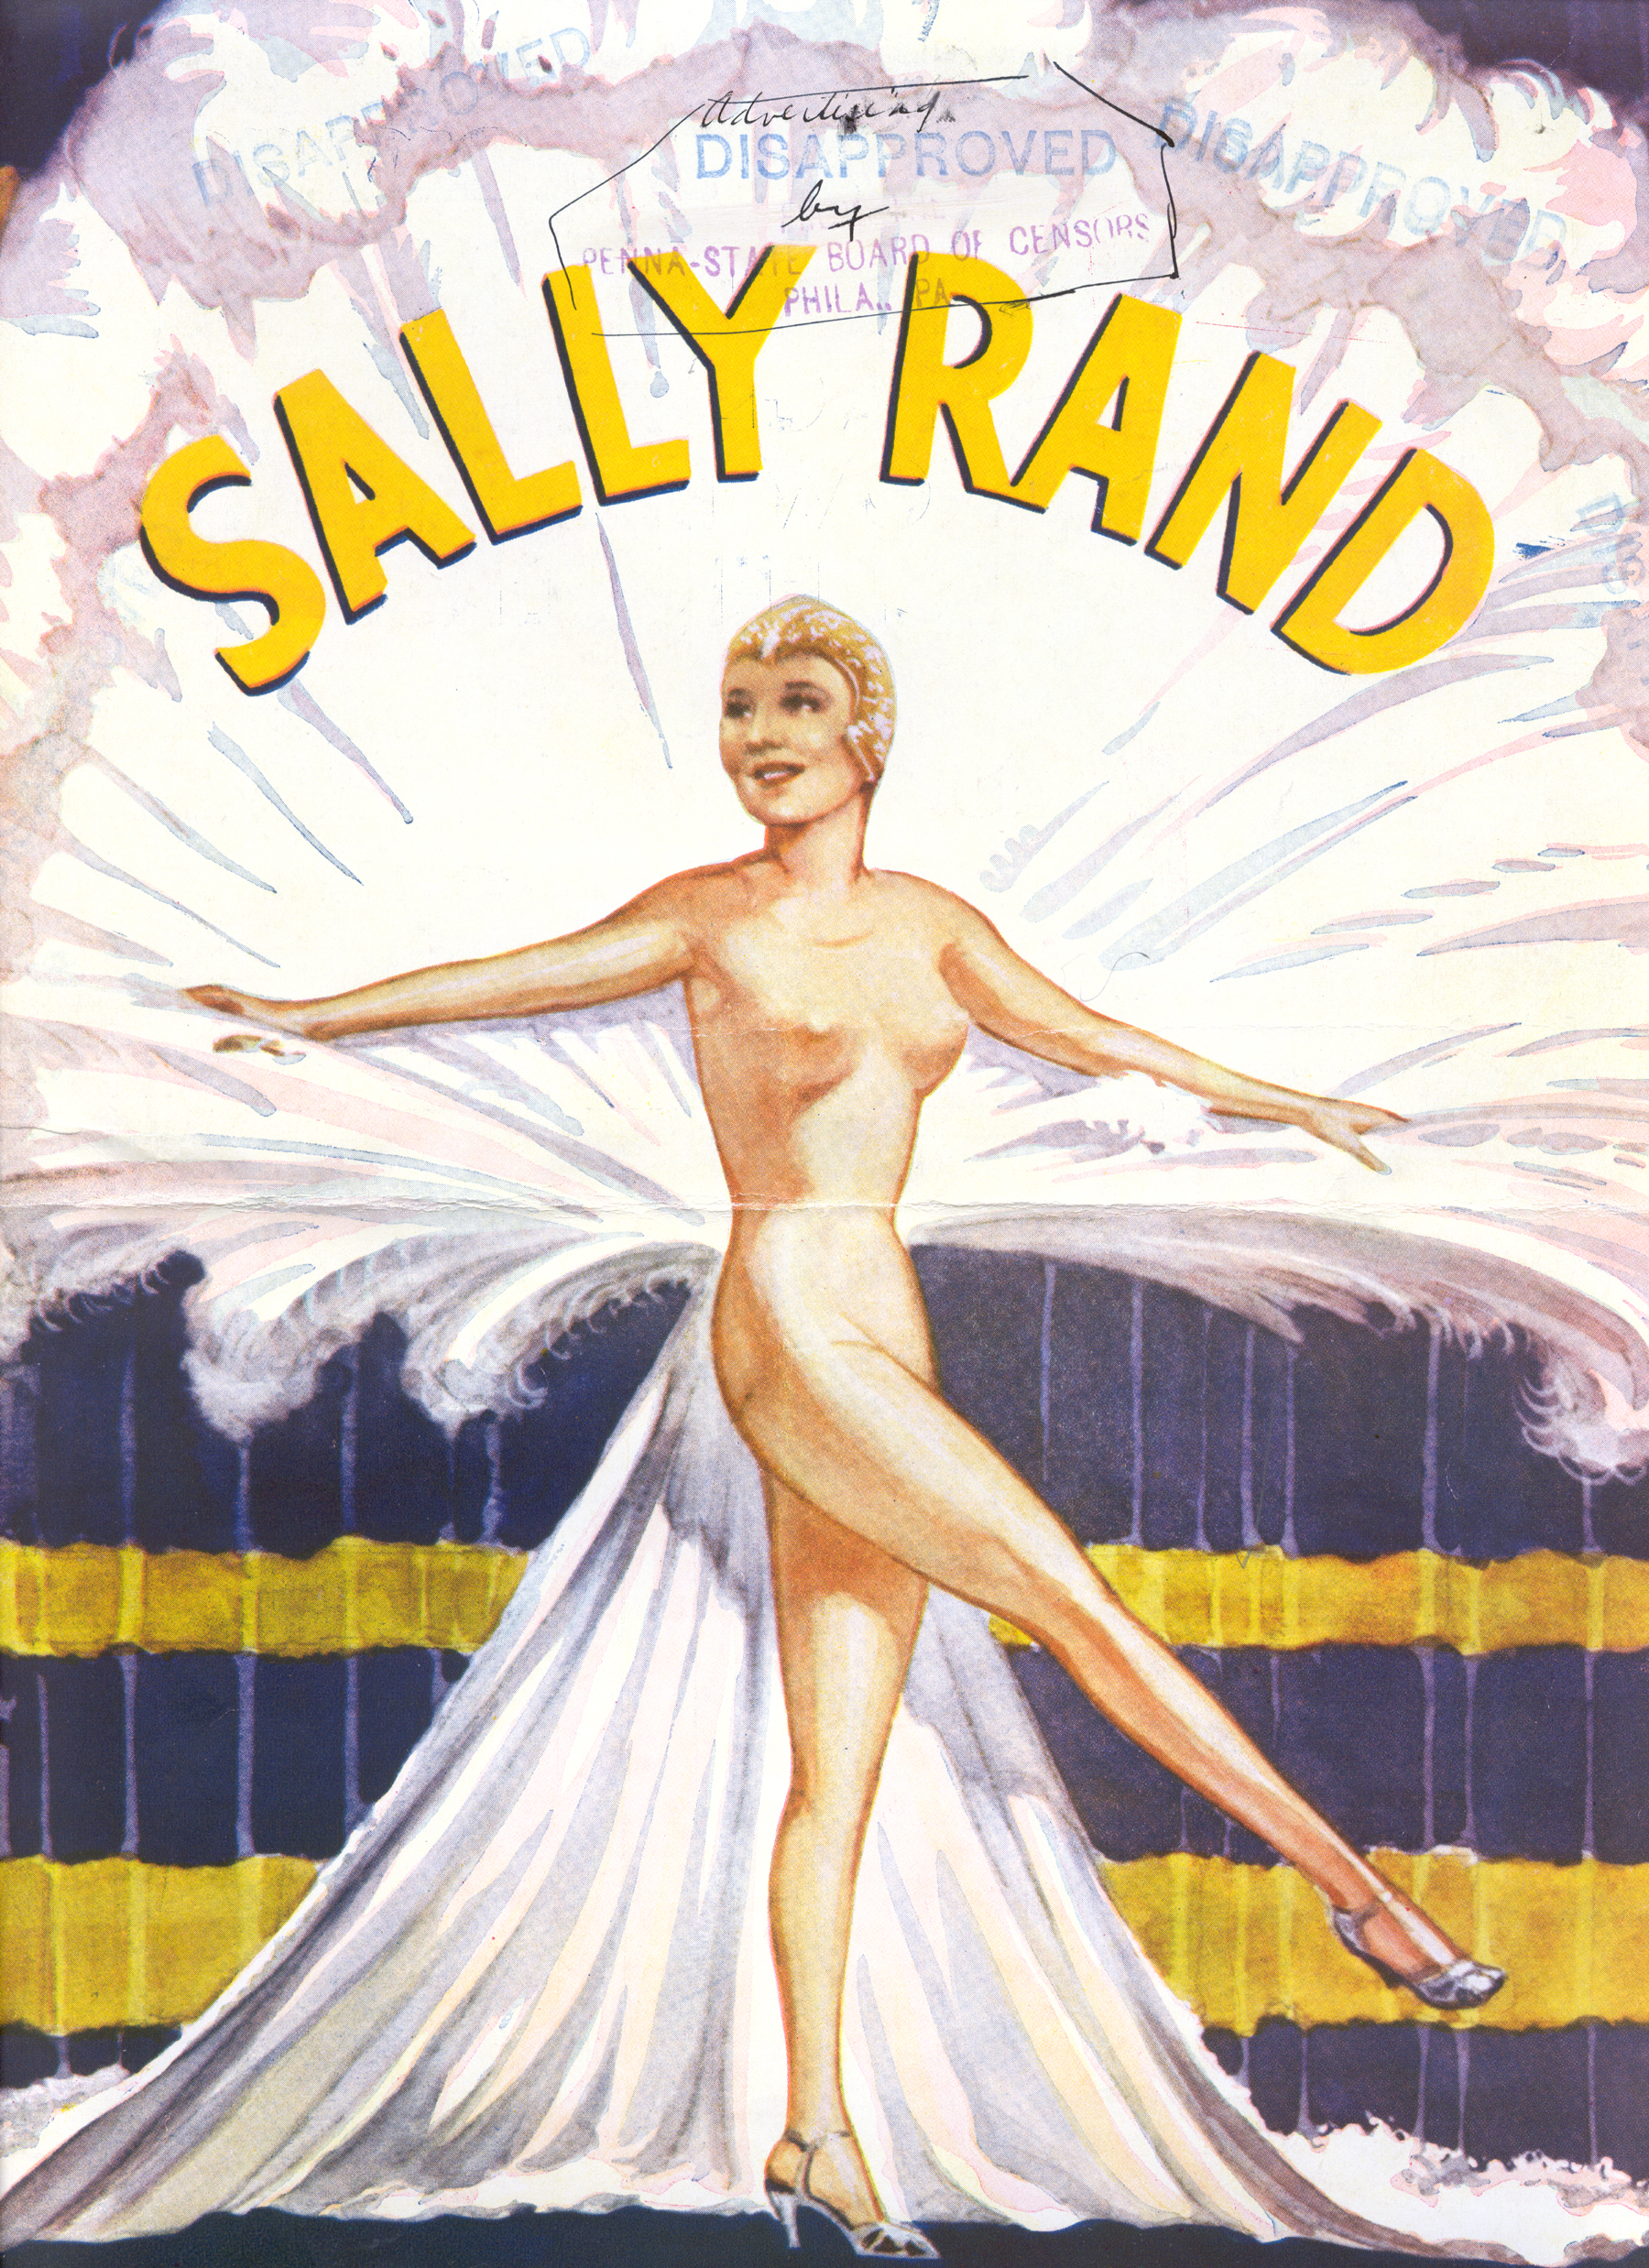 sally-rand-movies